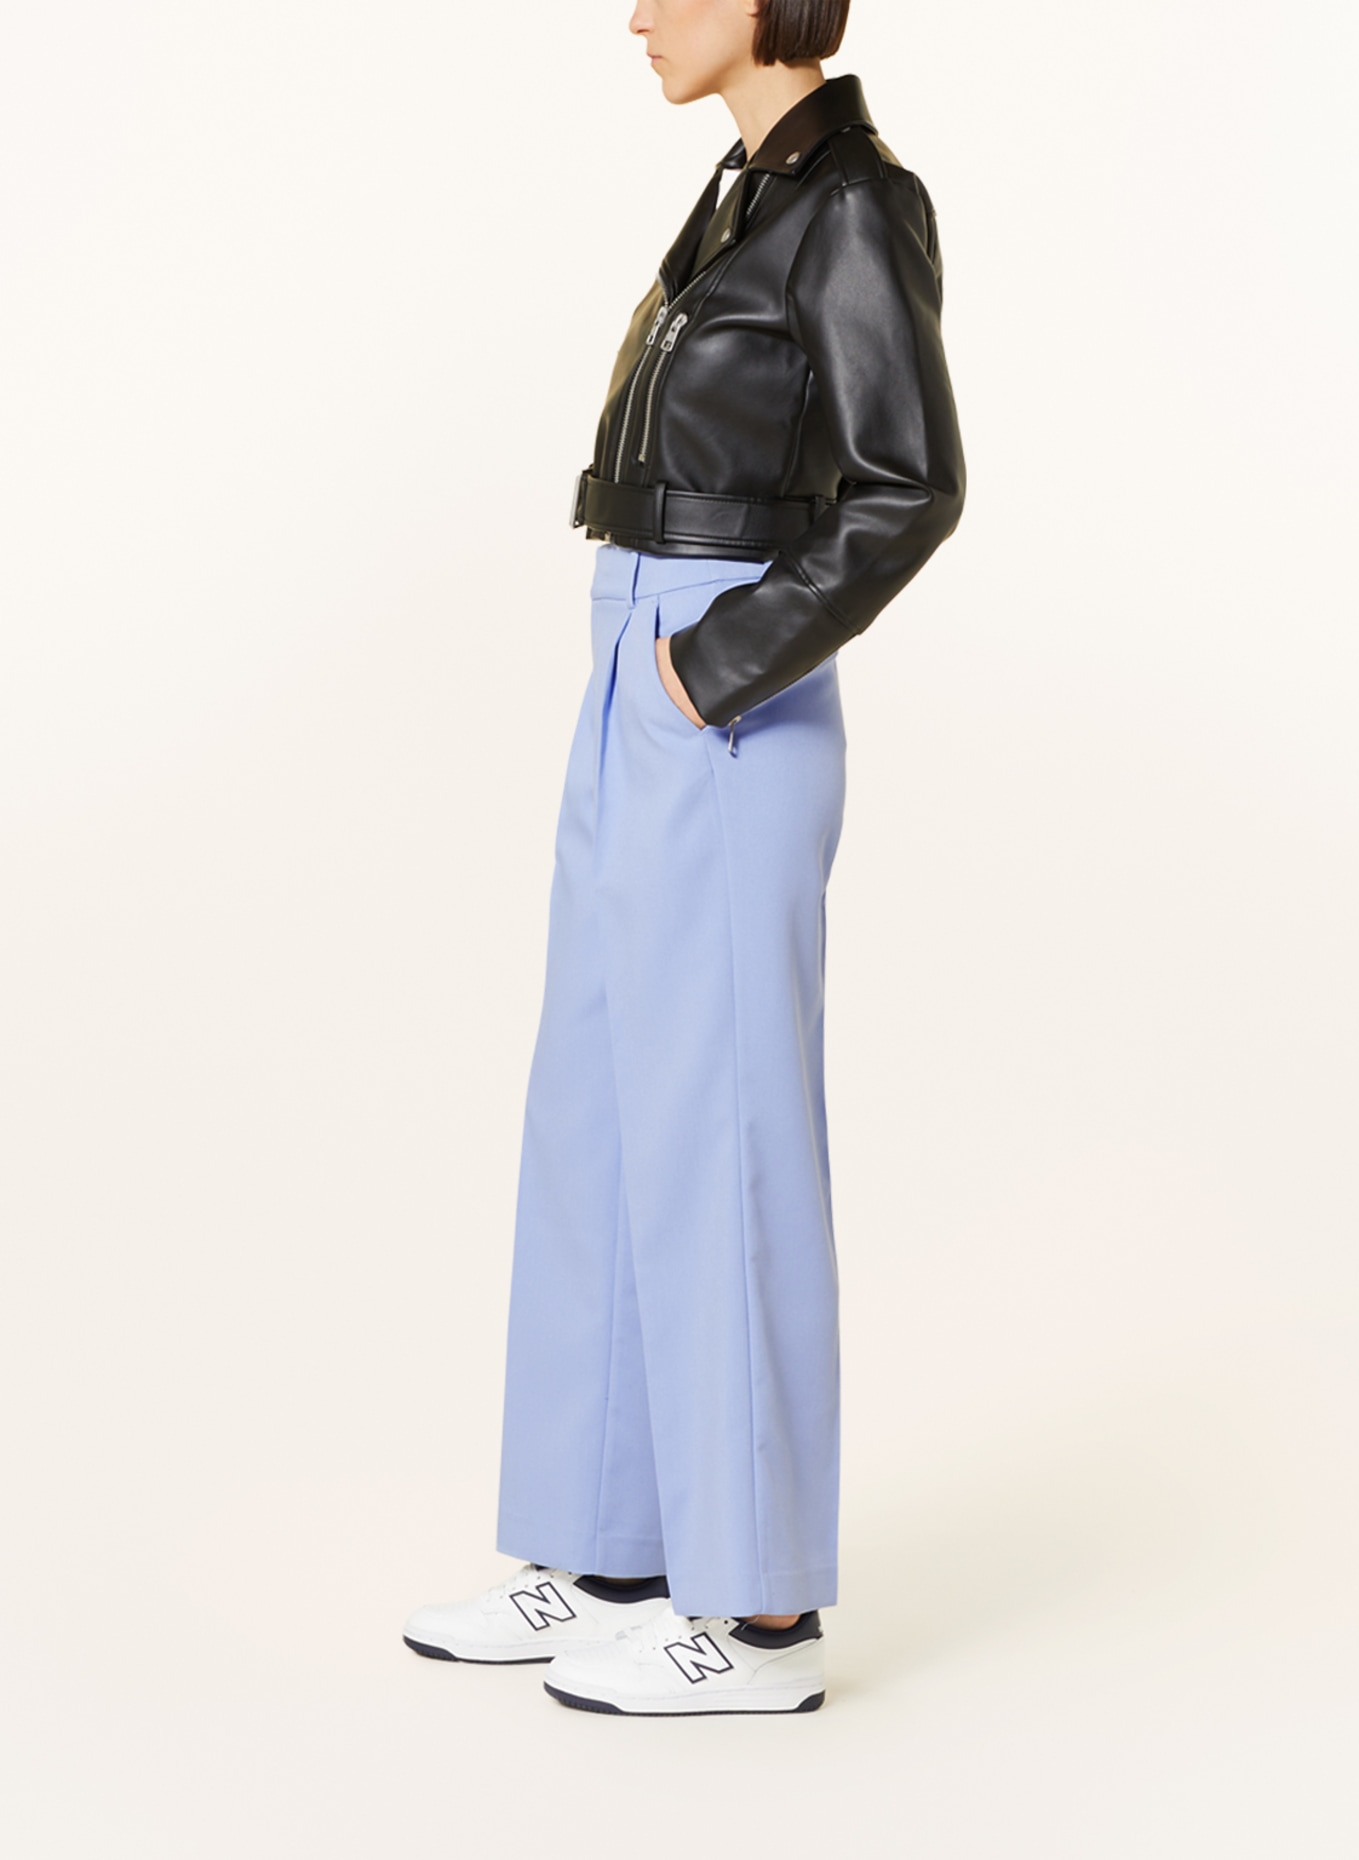 Gina Tricot FLARE JERSEY TROUSERS - Trousers - black - Zalando.de